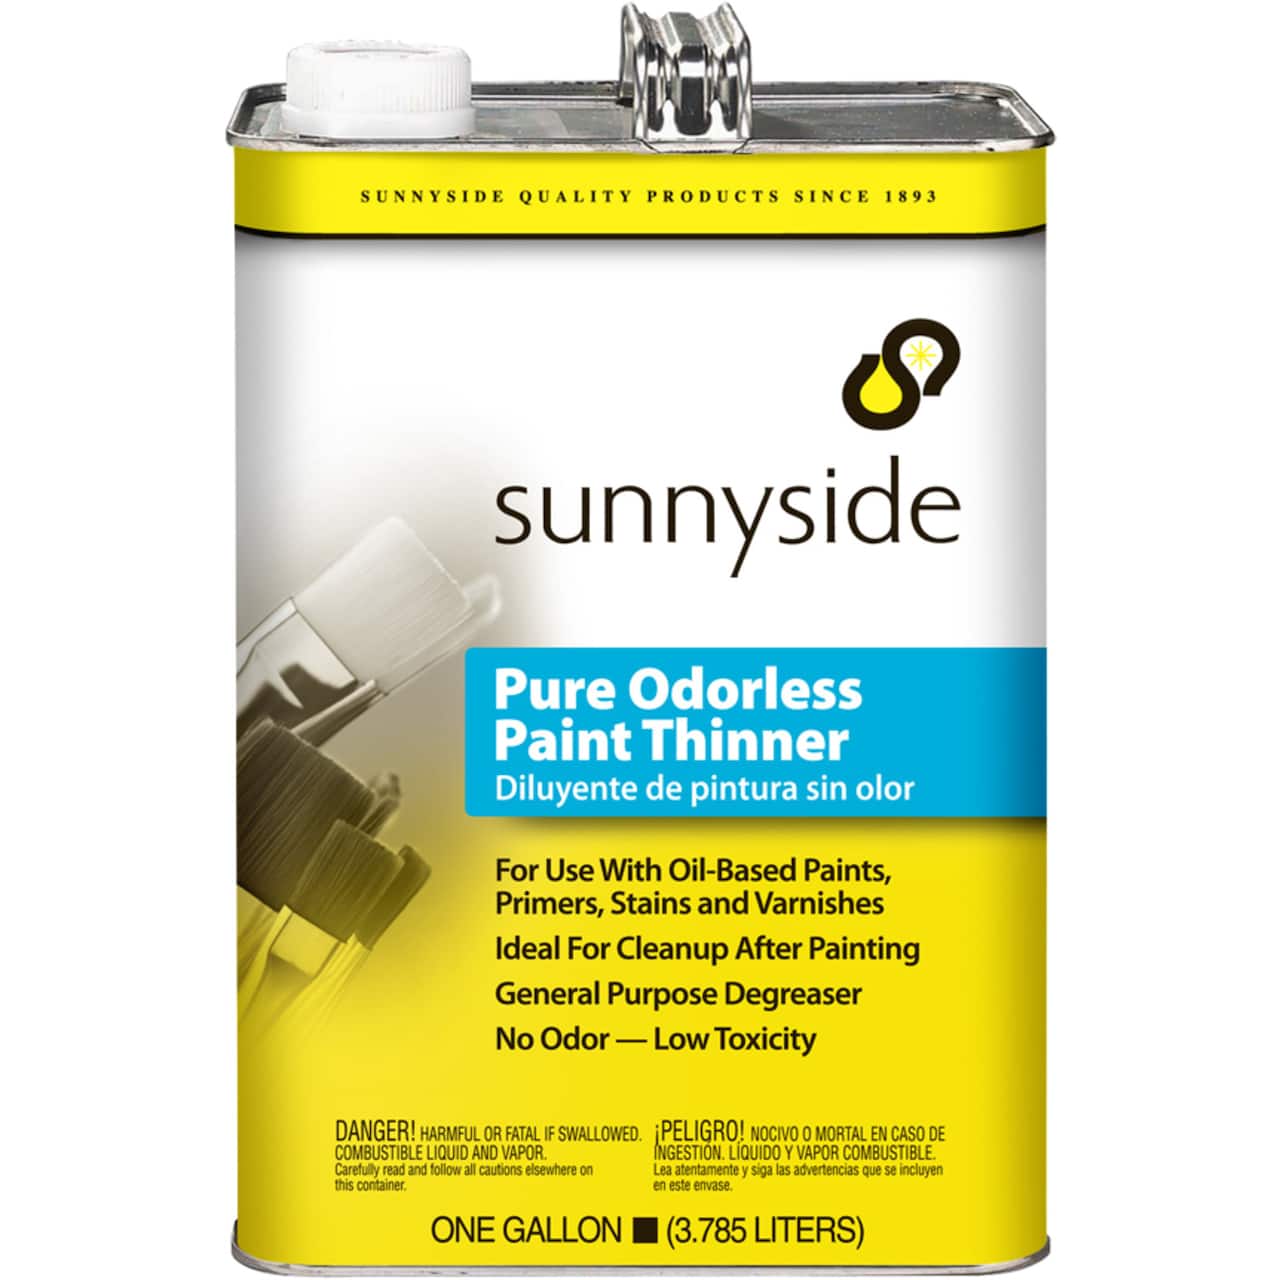 Sunnyside Odorless Paint Thinner